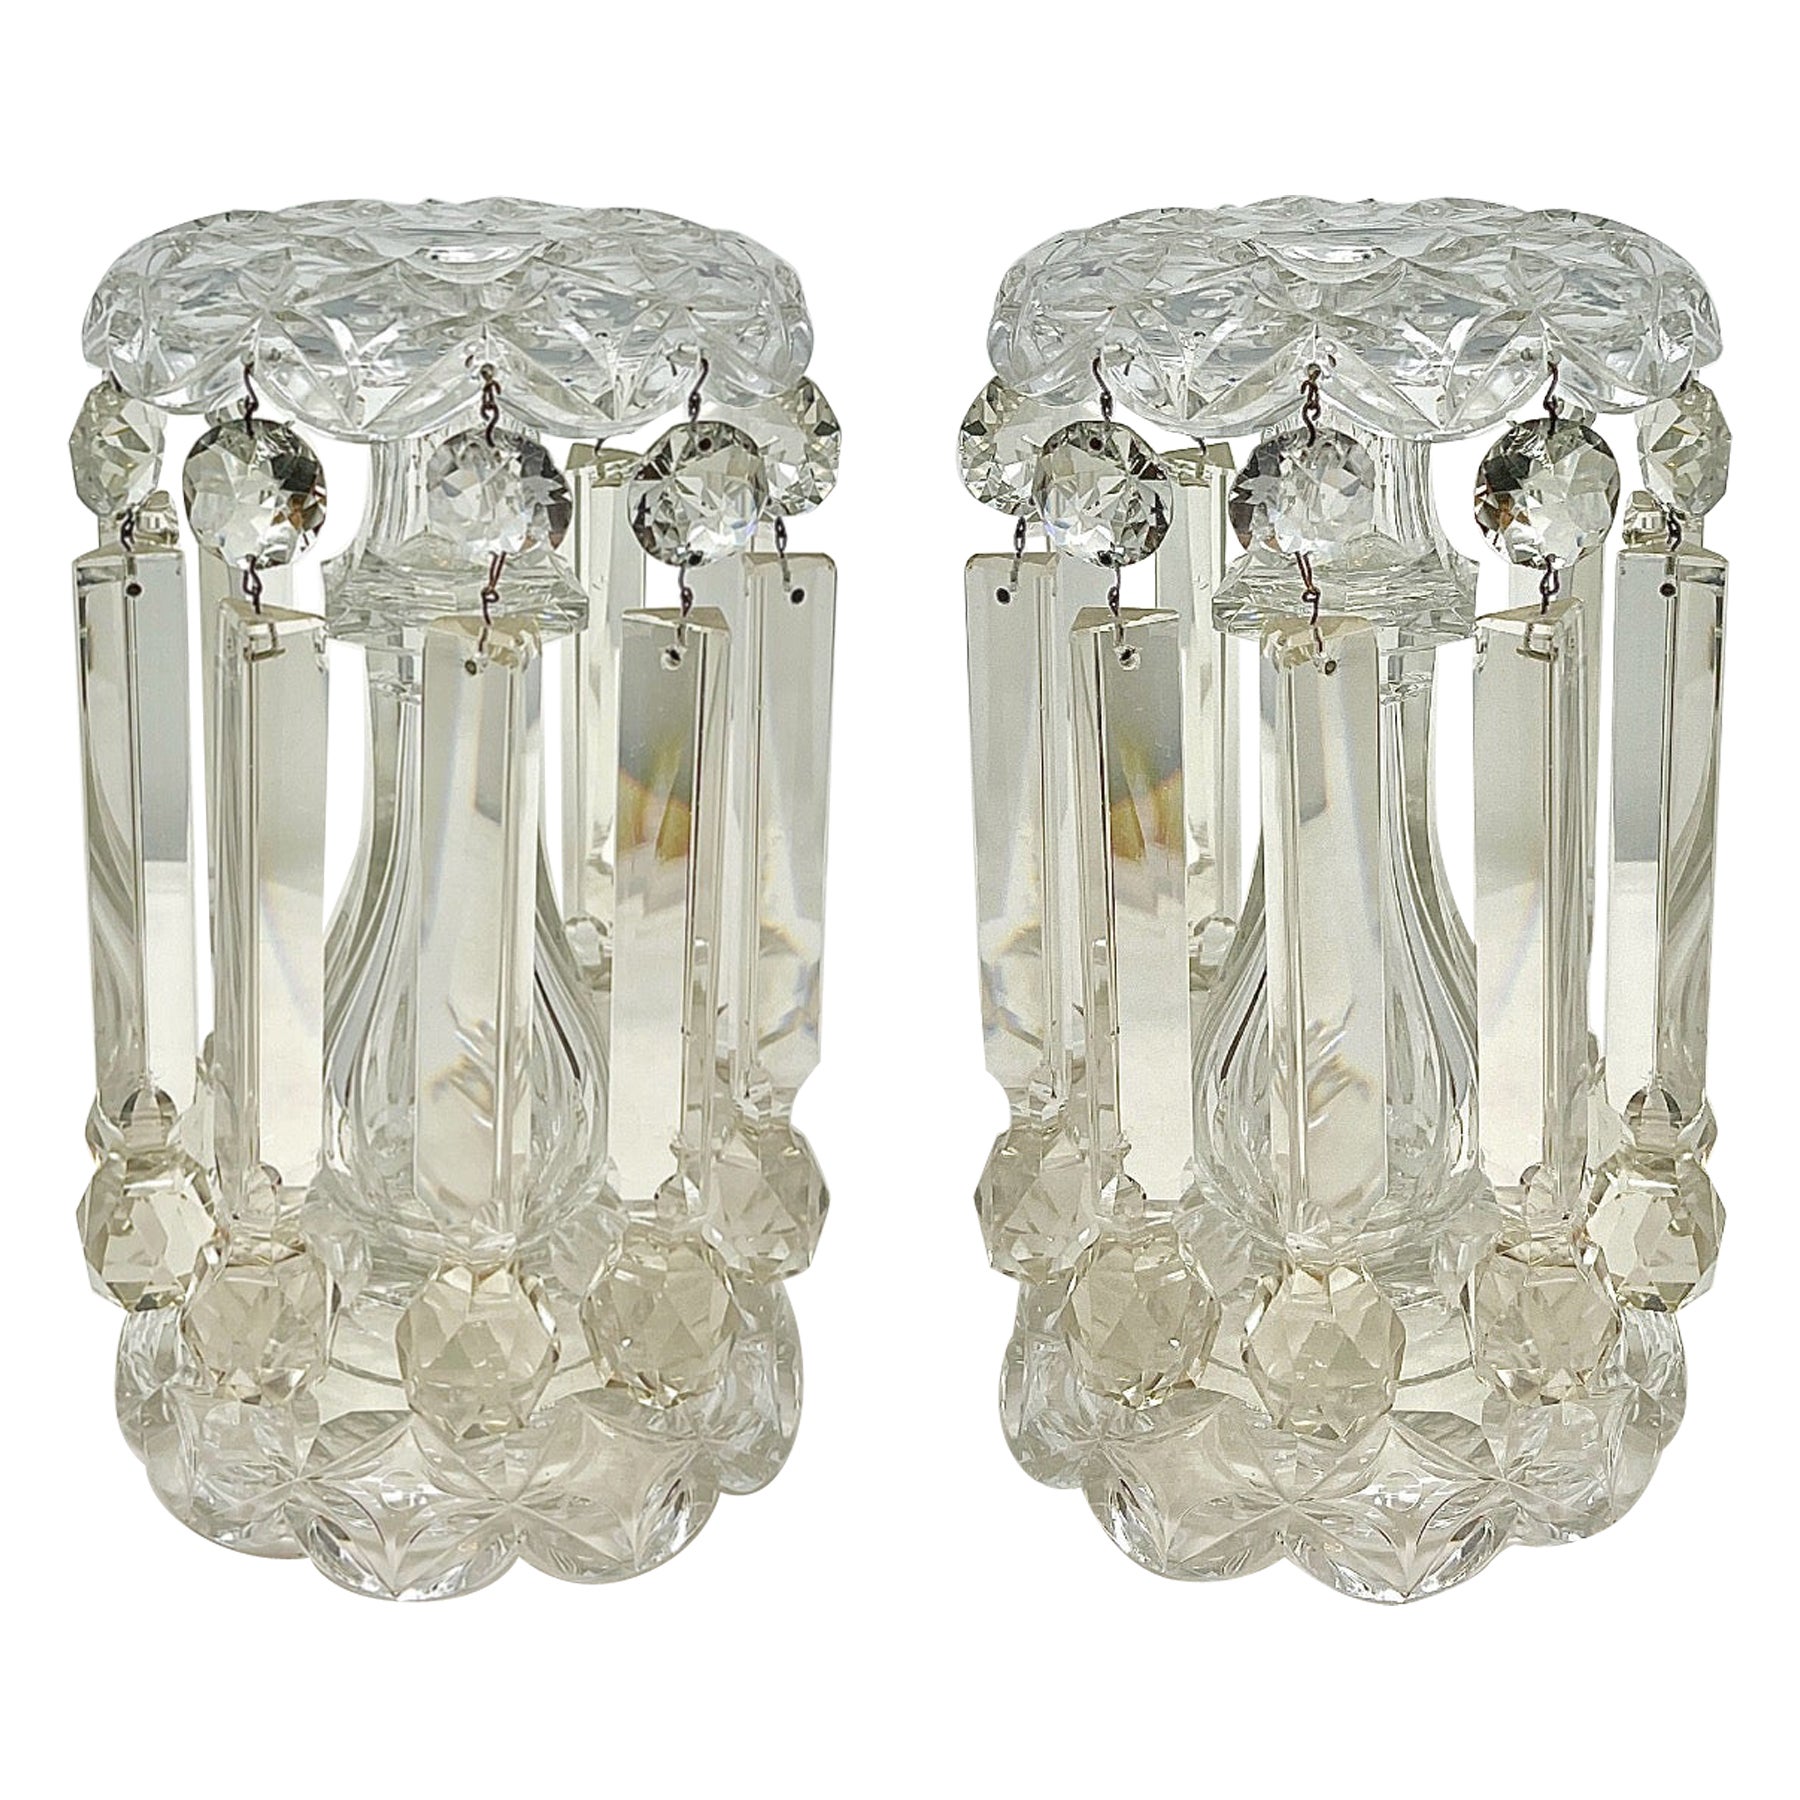 Paire de lustres ou bougeoirs français anciens en cristal taillé de Baccarat, vers les années 1860.